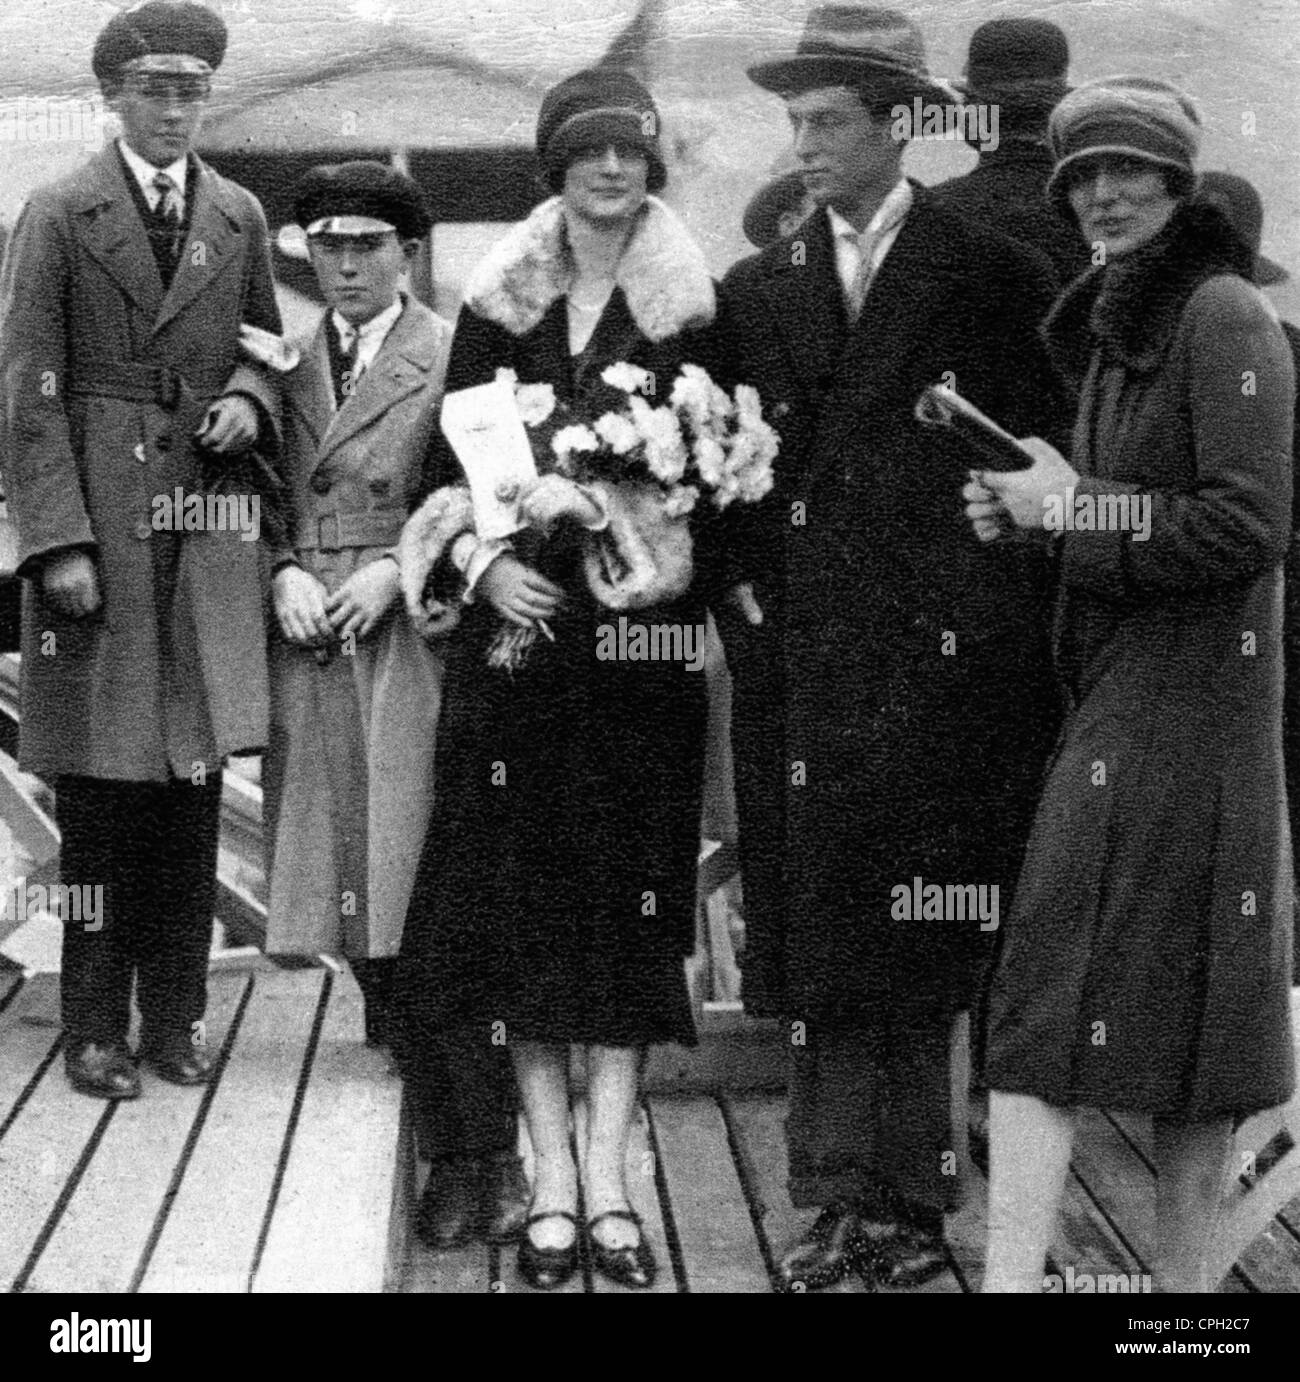 Léopold III, 3.11.1901 - 25.9.1983, roi des Belges 23.2.1934 - 16.7.1951, avec fiancé la princesse Astrid de Suède, sur la tribune devant le château d'Ulriksdal, 1926, Banque D'Images